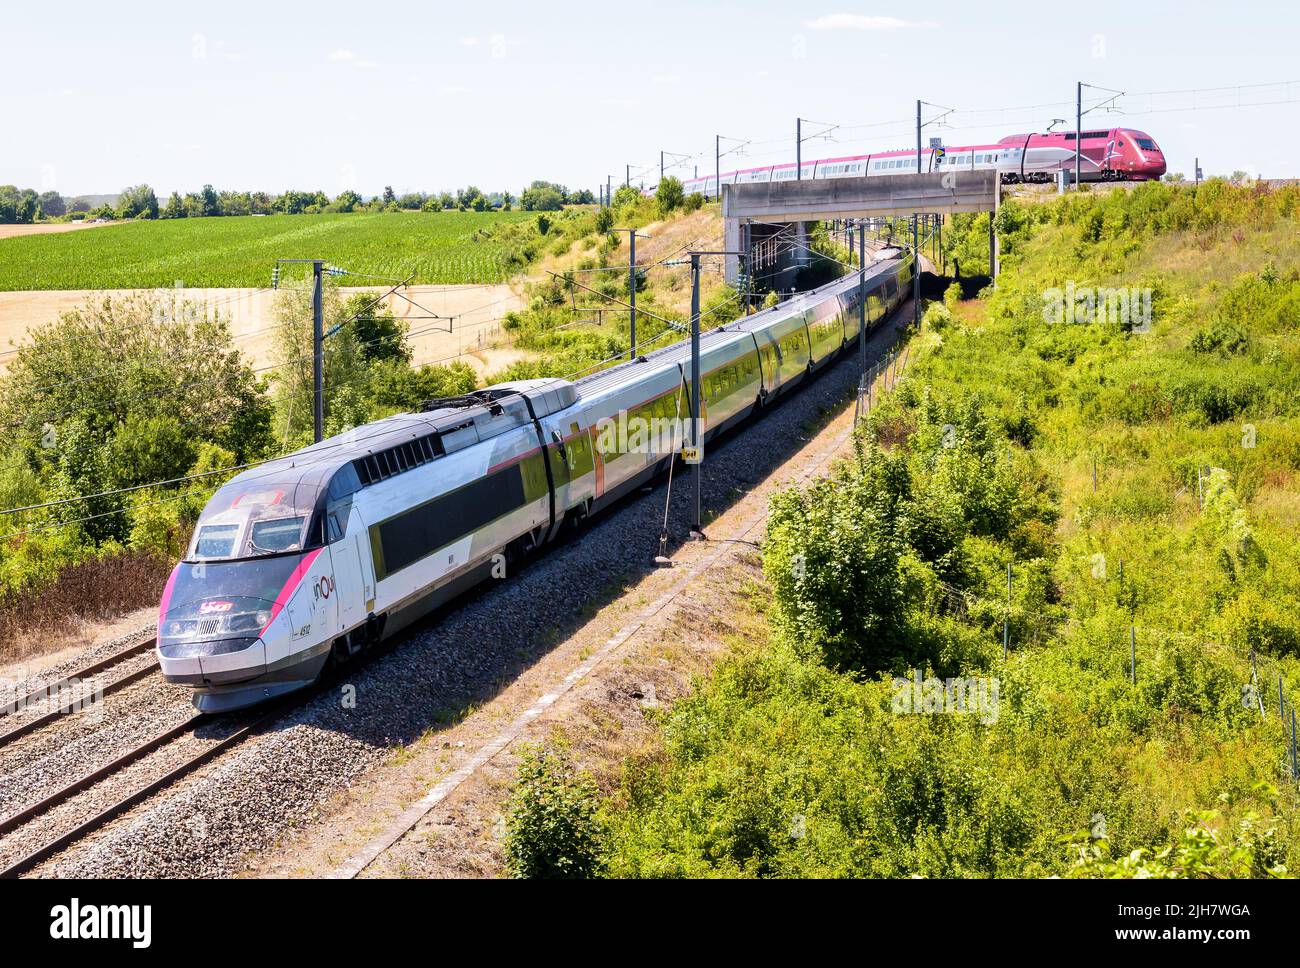 Un TGV Inoui y un tren de alta velocidad Thalys pasan uno sobre otro en el campo en un día soleado. Foto de stock